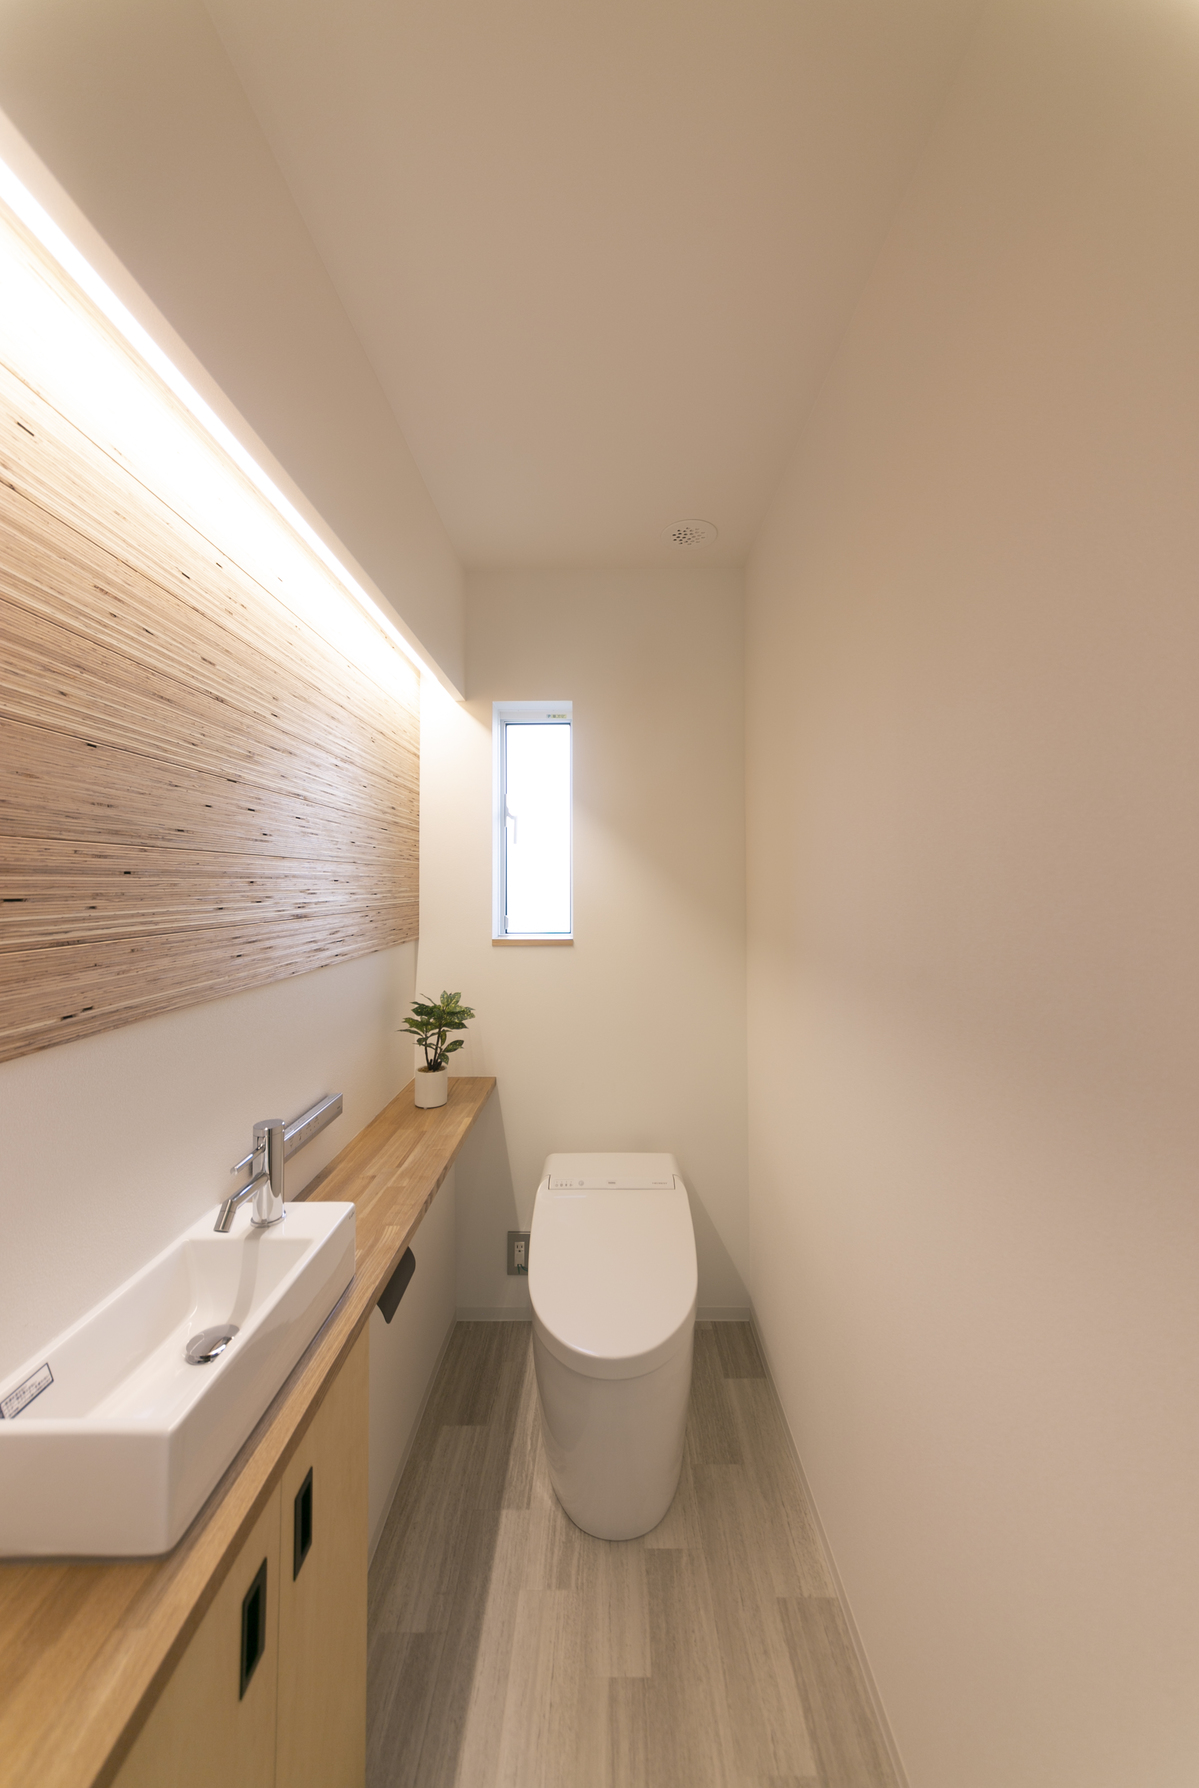 間接照明でおしゃれなトイレに ピース島根 島根県の新築住宅 住宅メーカー情報